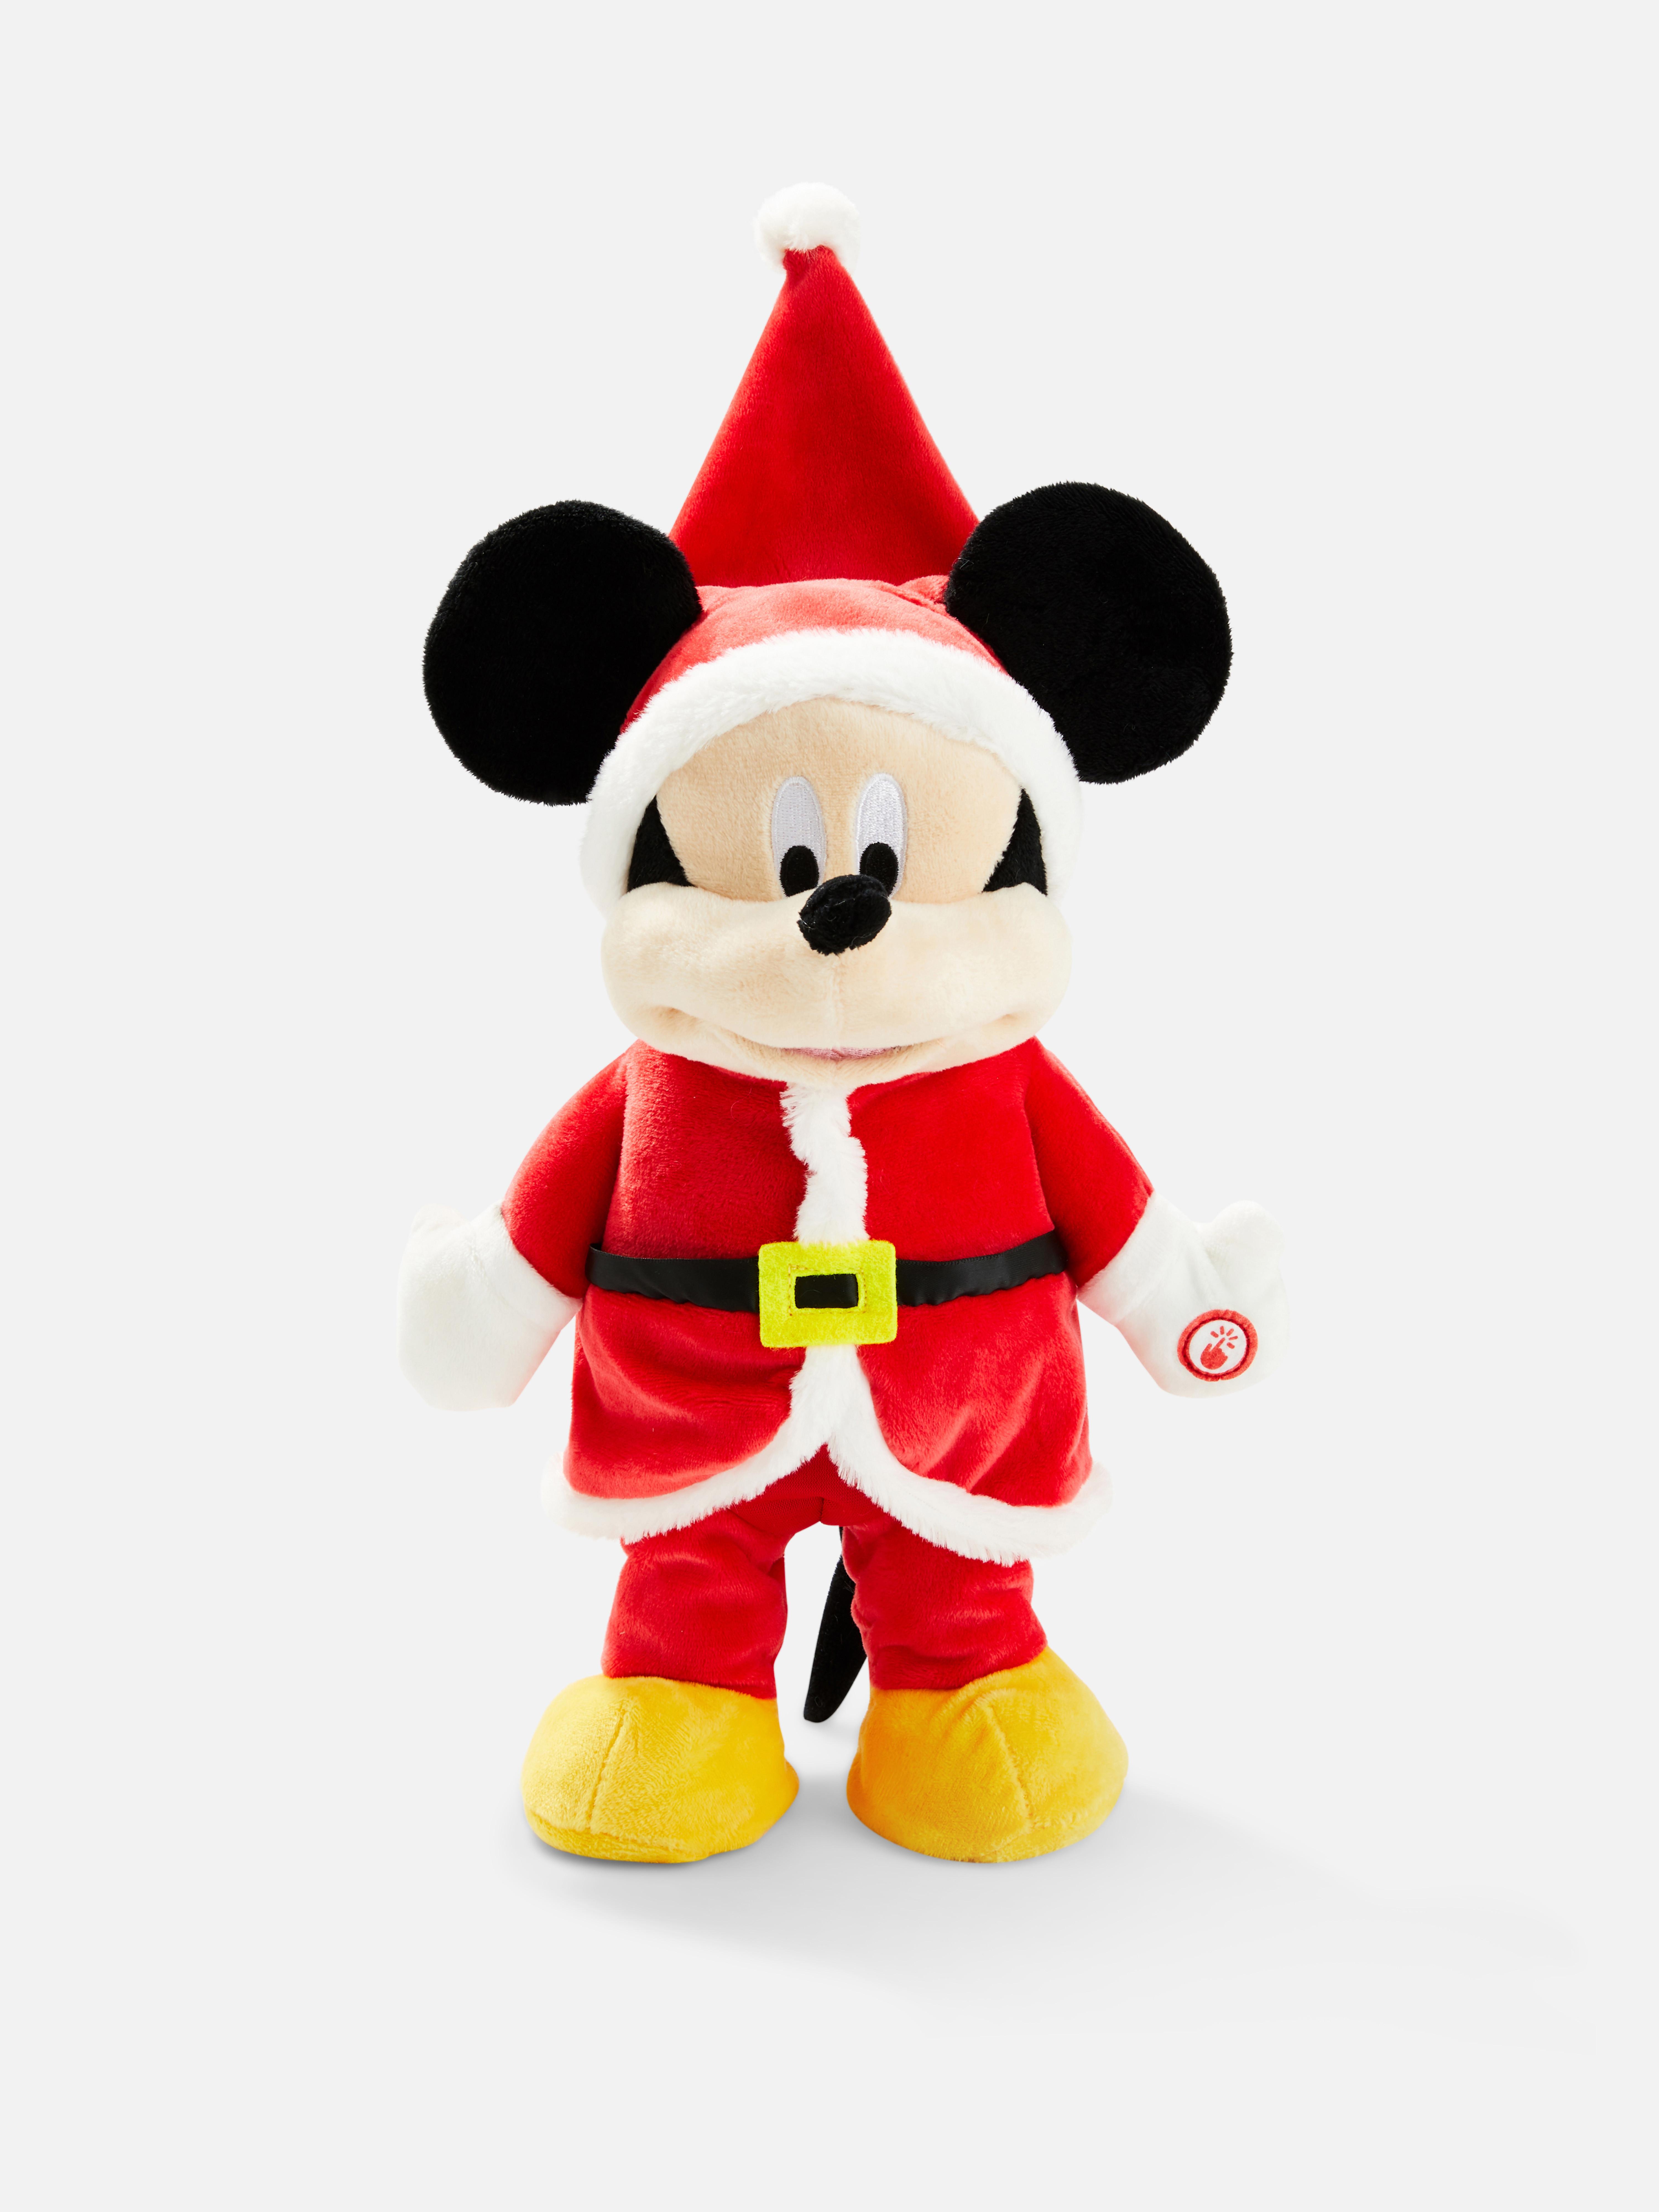 Disney’s Mickey Mouse Plush Toy